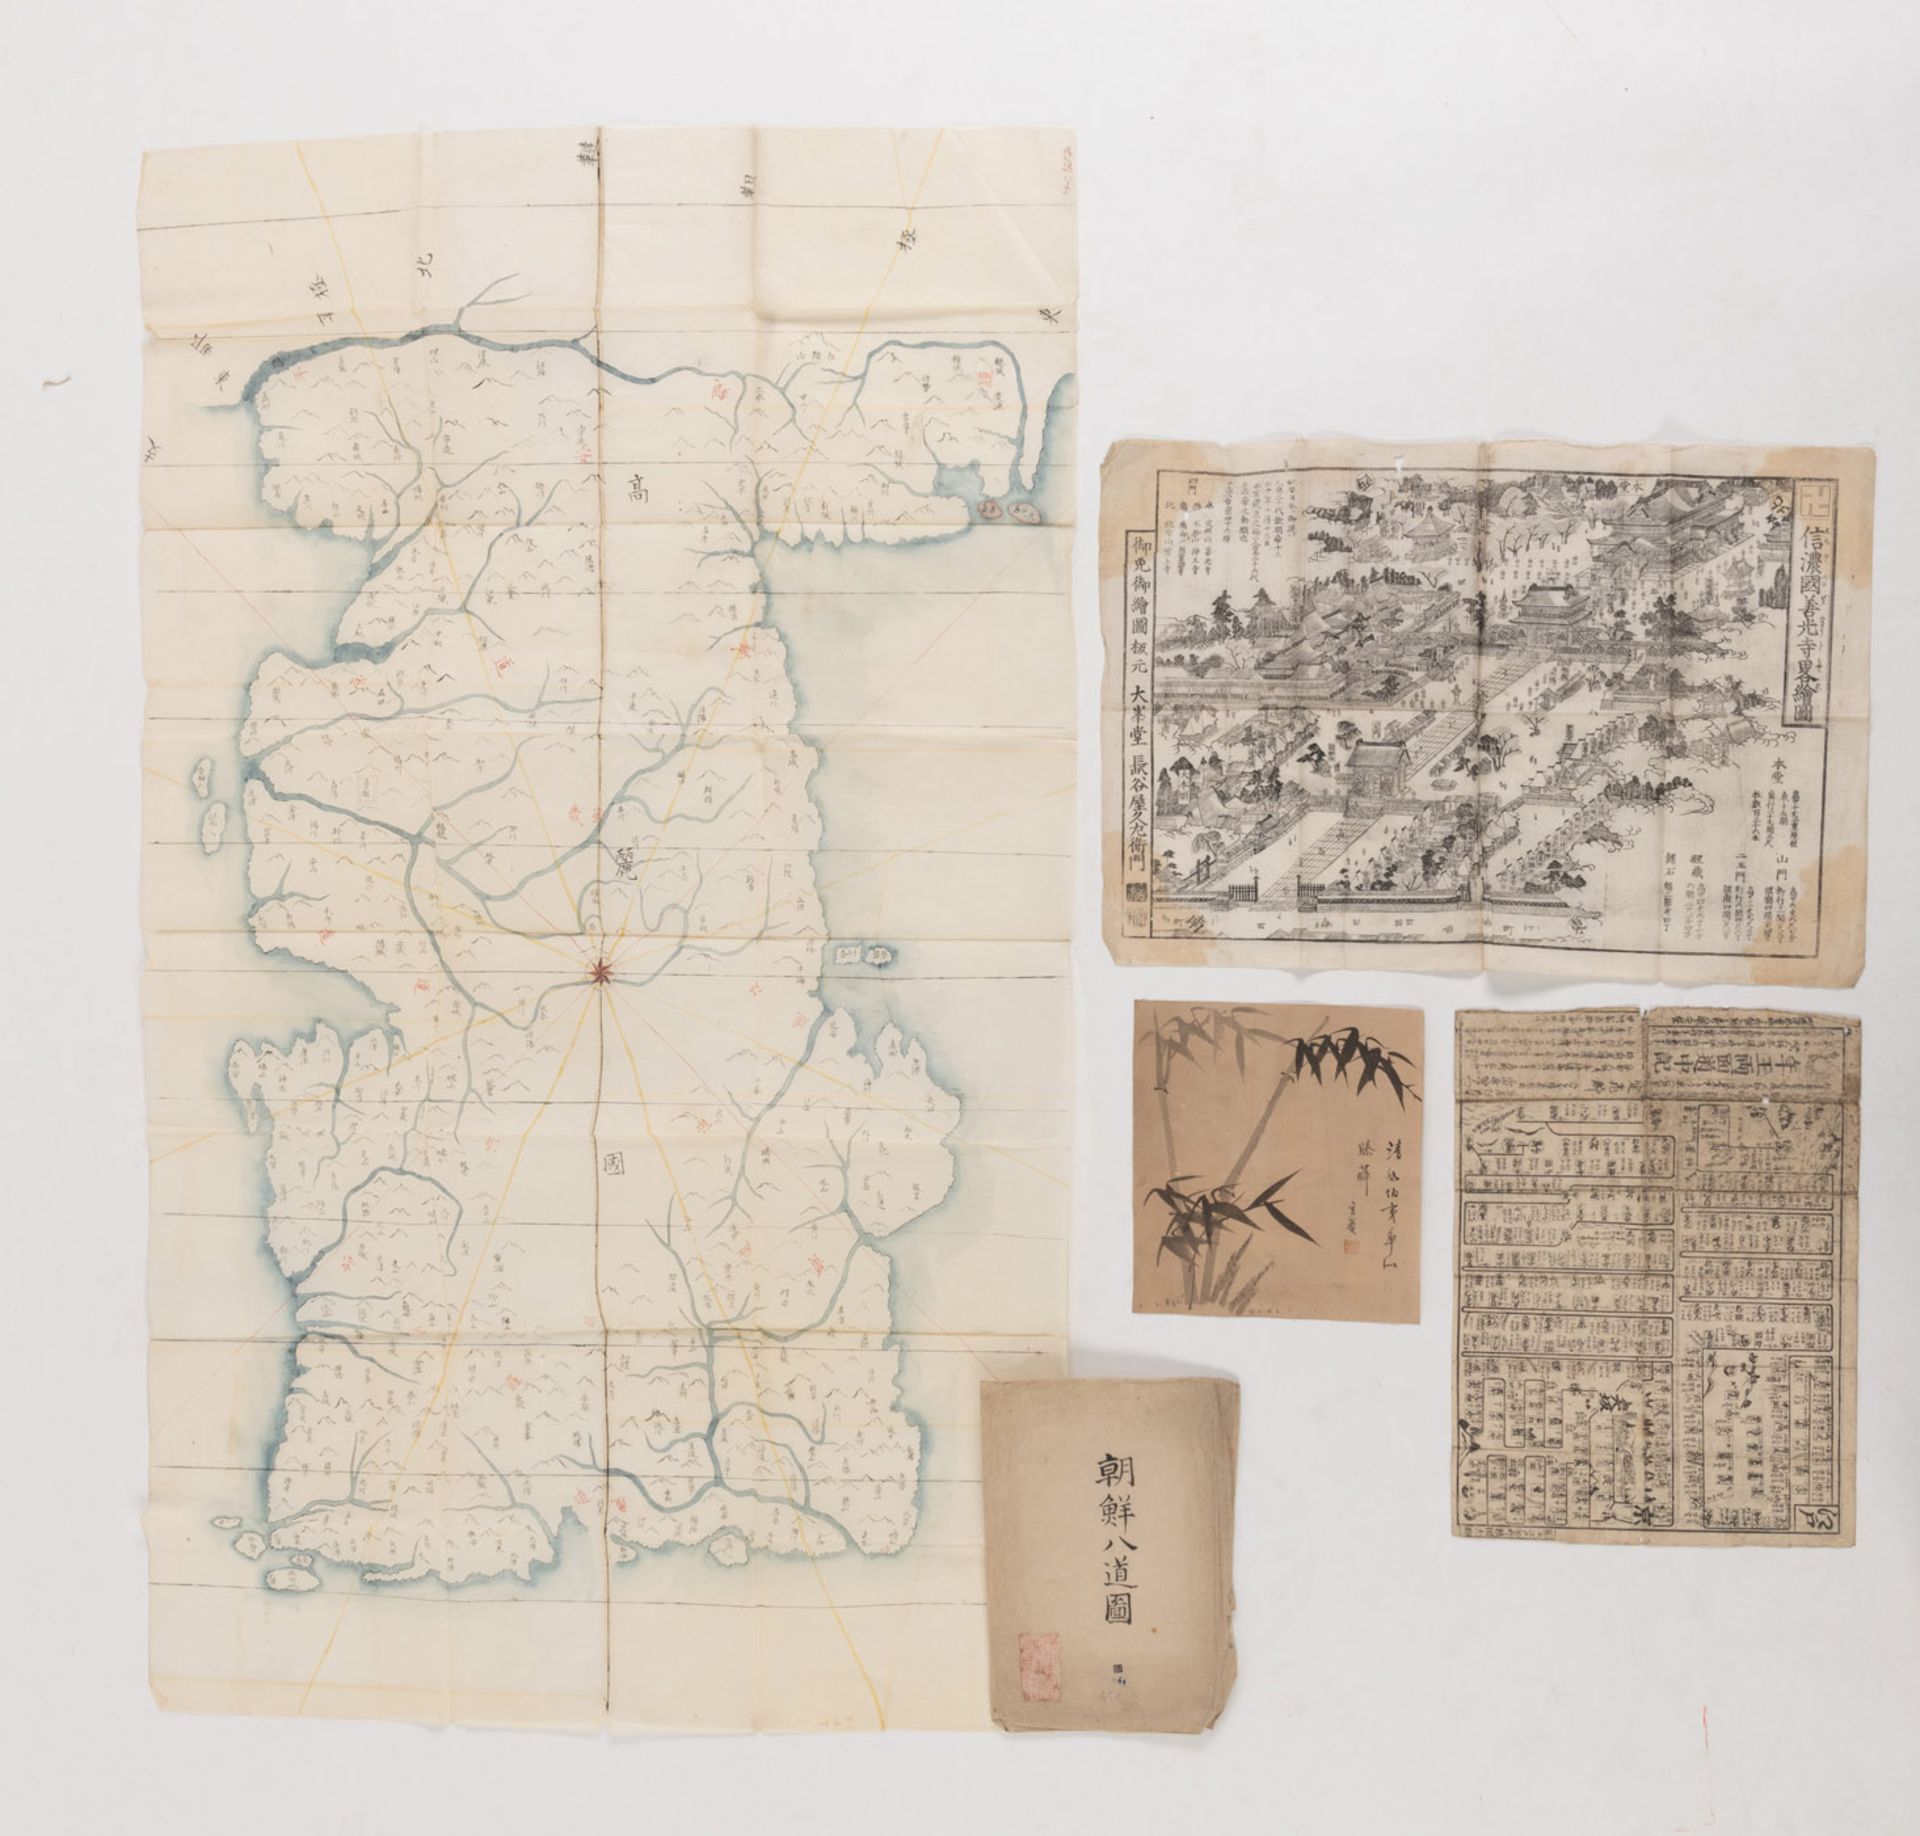 THREE HISTORICAL MAPS: 'TOSHIDAMA DOCHUKI', 'SHINANO NO KUNI ZENKŌJI RYAKUEZU' (MAP OF THE SANKOJI